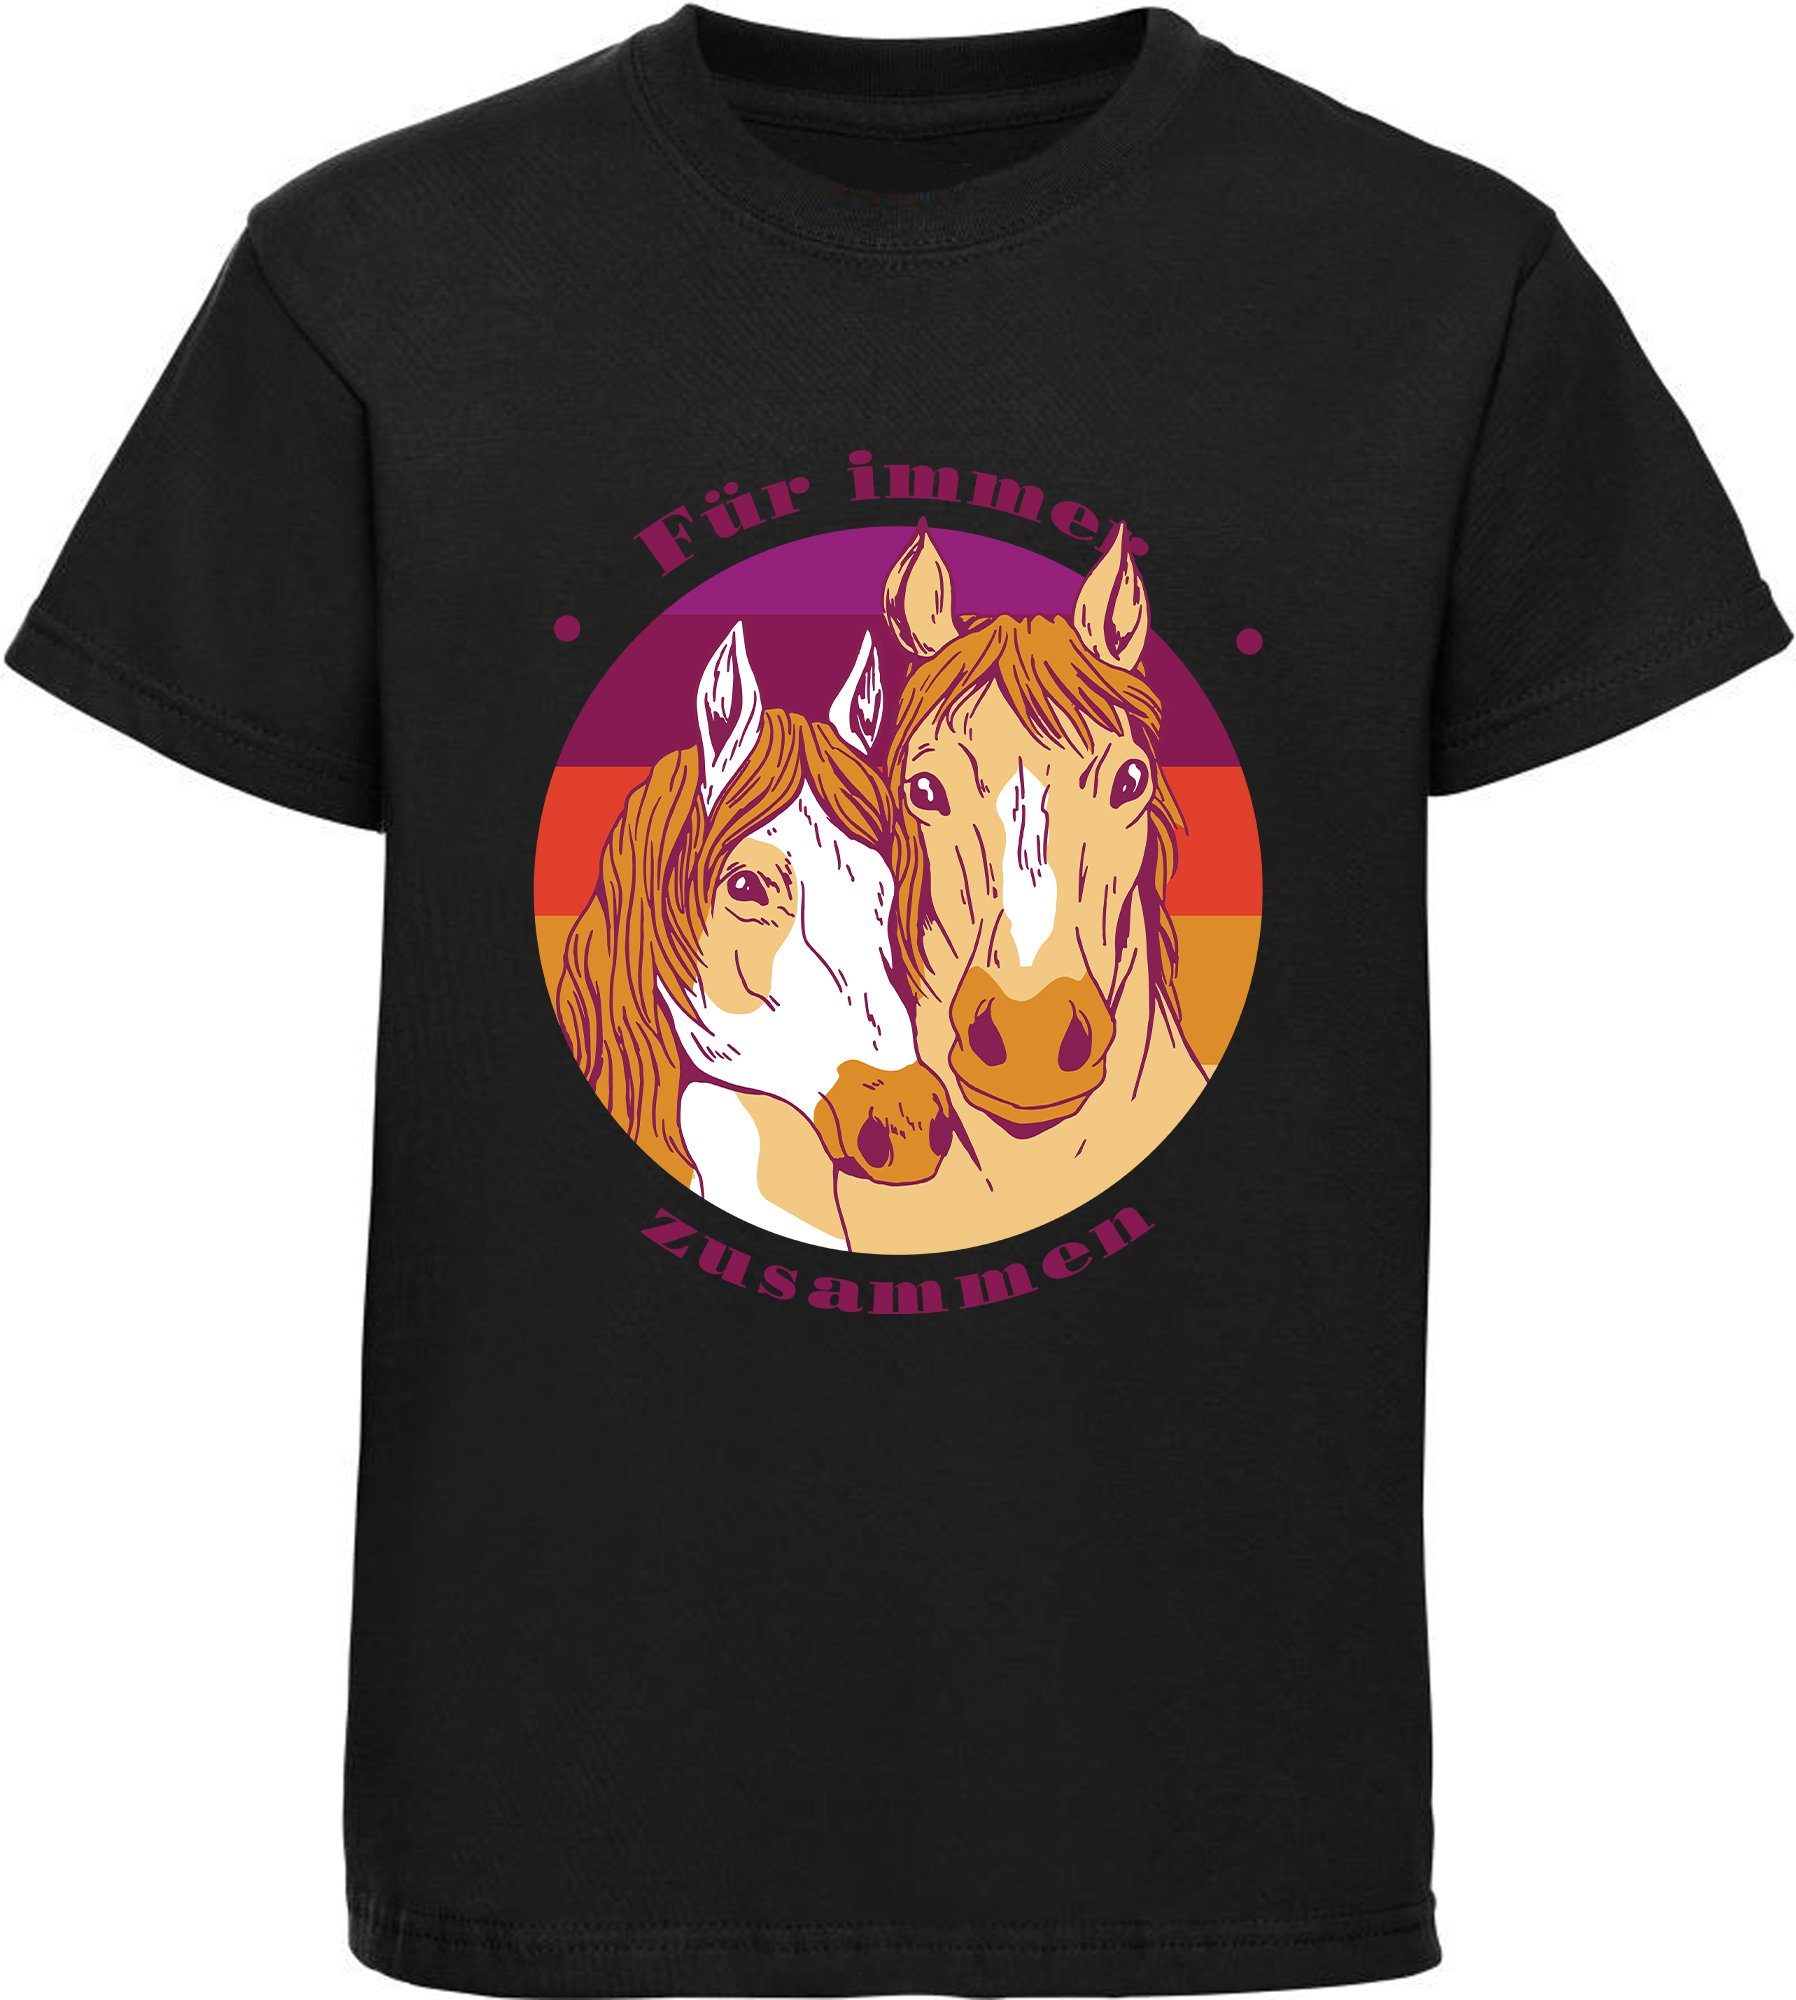 MyDesign24 Print-Shirt bedrucktes Mädchen T-Shirt zwei Pferdeköpfe Baumwollshirt mit Aufdruck, i148 schwarz